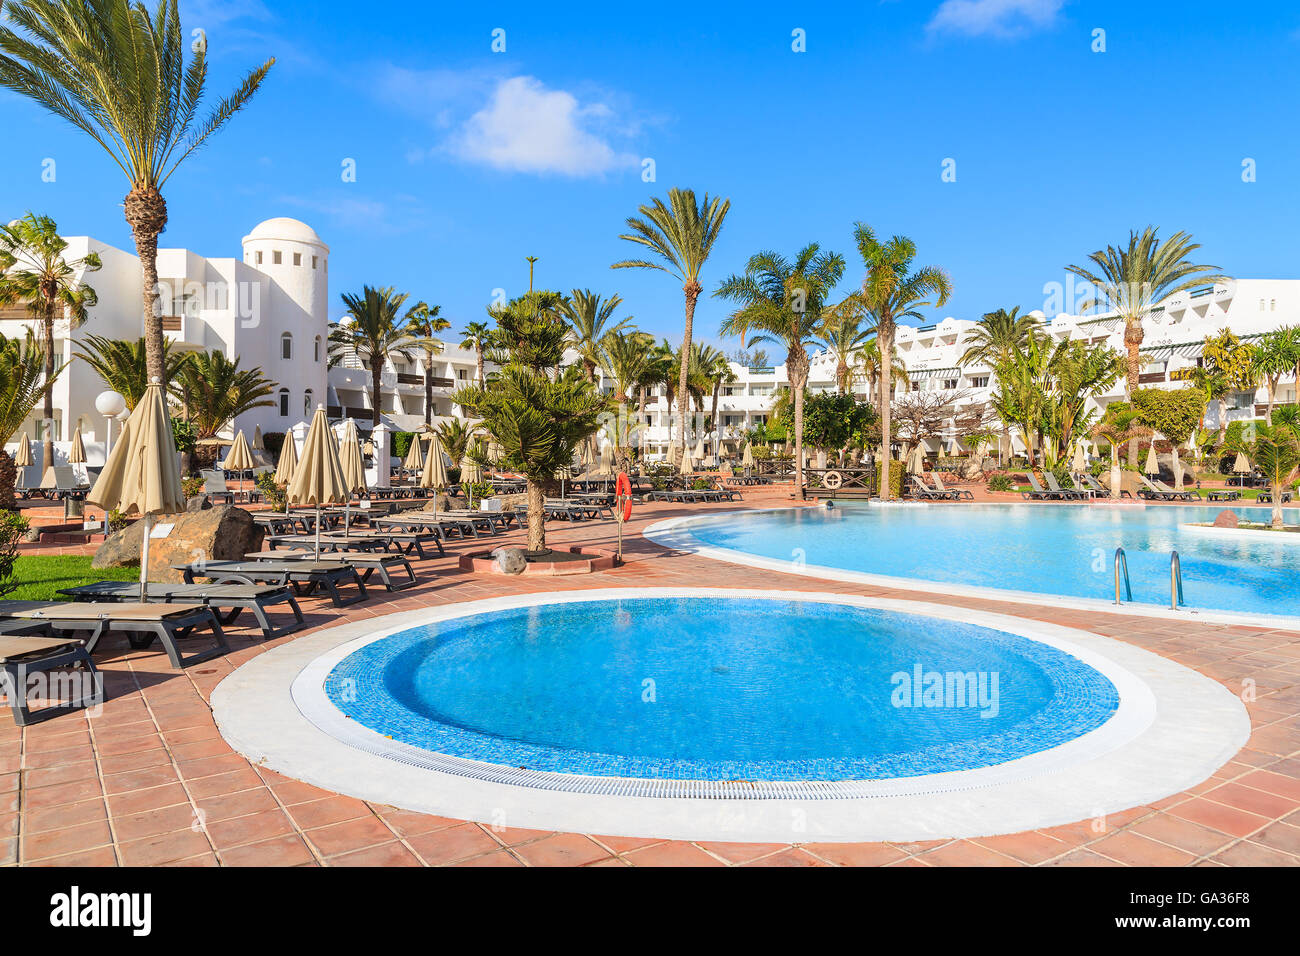 PLAYA BLANCA, Lanzarote Island - Jan 16, 2015: piscina nel giardino tropicale di hotel di lusso. Le isole Canarie sono meta di vacanze per i turisti europei nel periodo invernale. Foto Stock